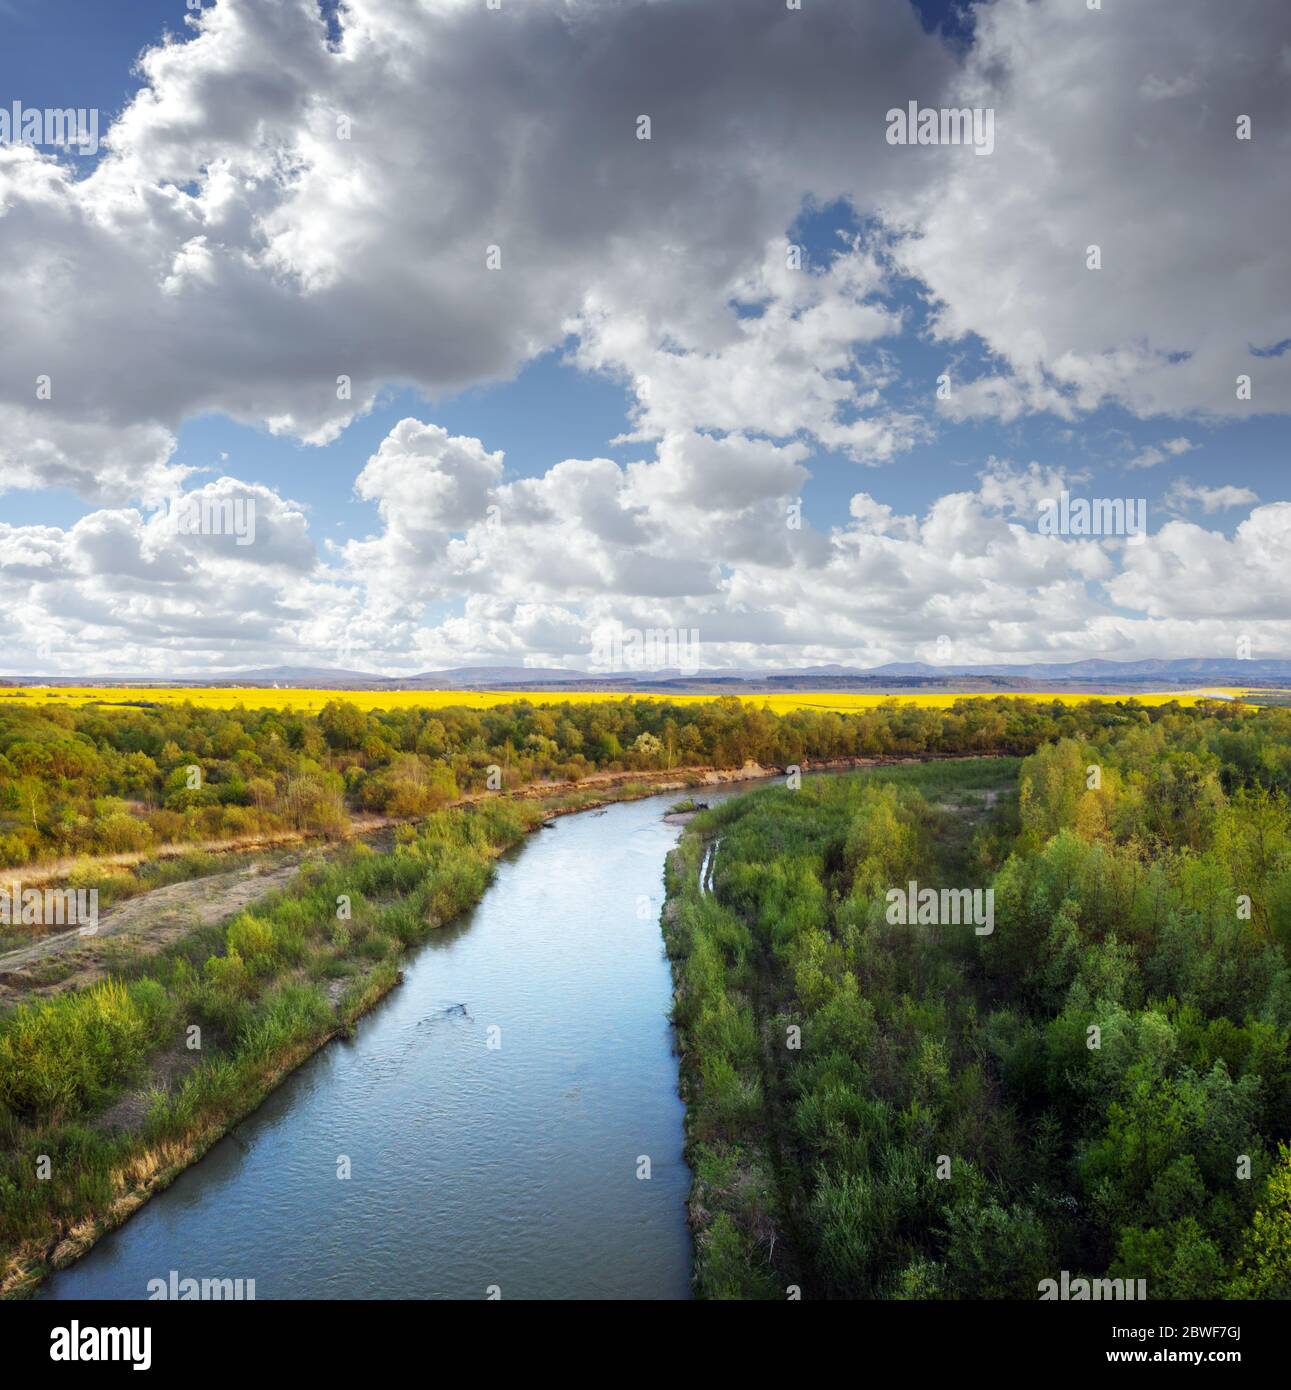 Vuelo a través del majestuoso río Dnister, el exuberante bosque verde y los florecientes campos de colza amarilla al atardecer. Ucrania, Europa. Fotografía de paisajes Foto de stock